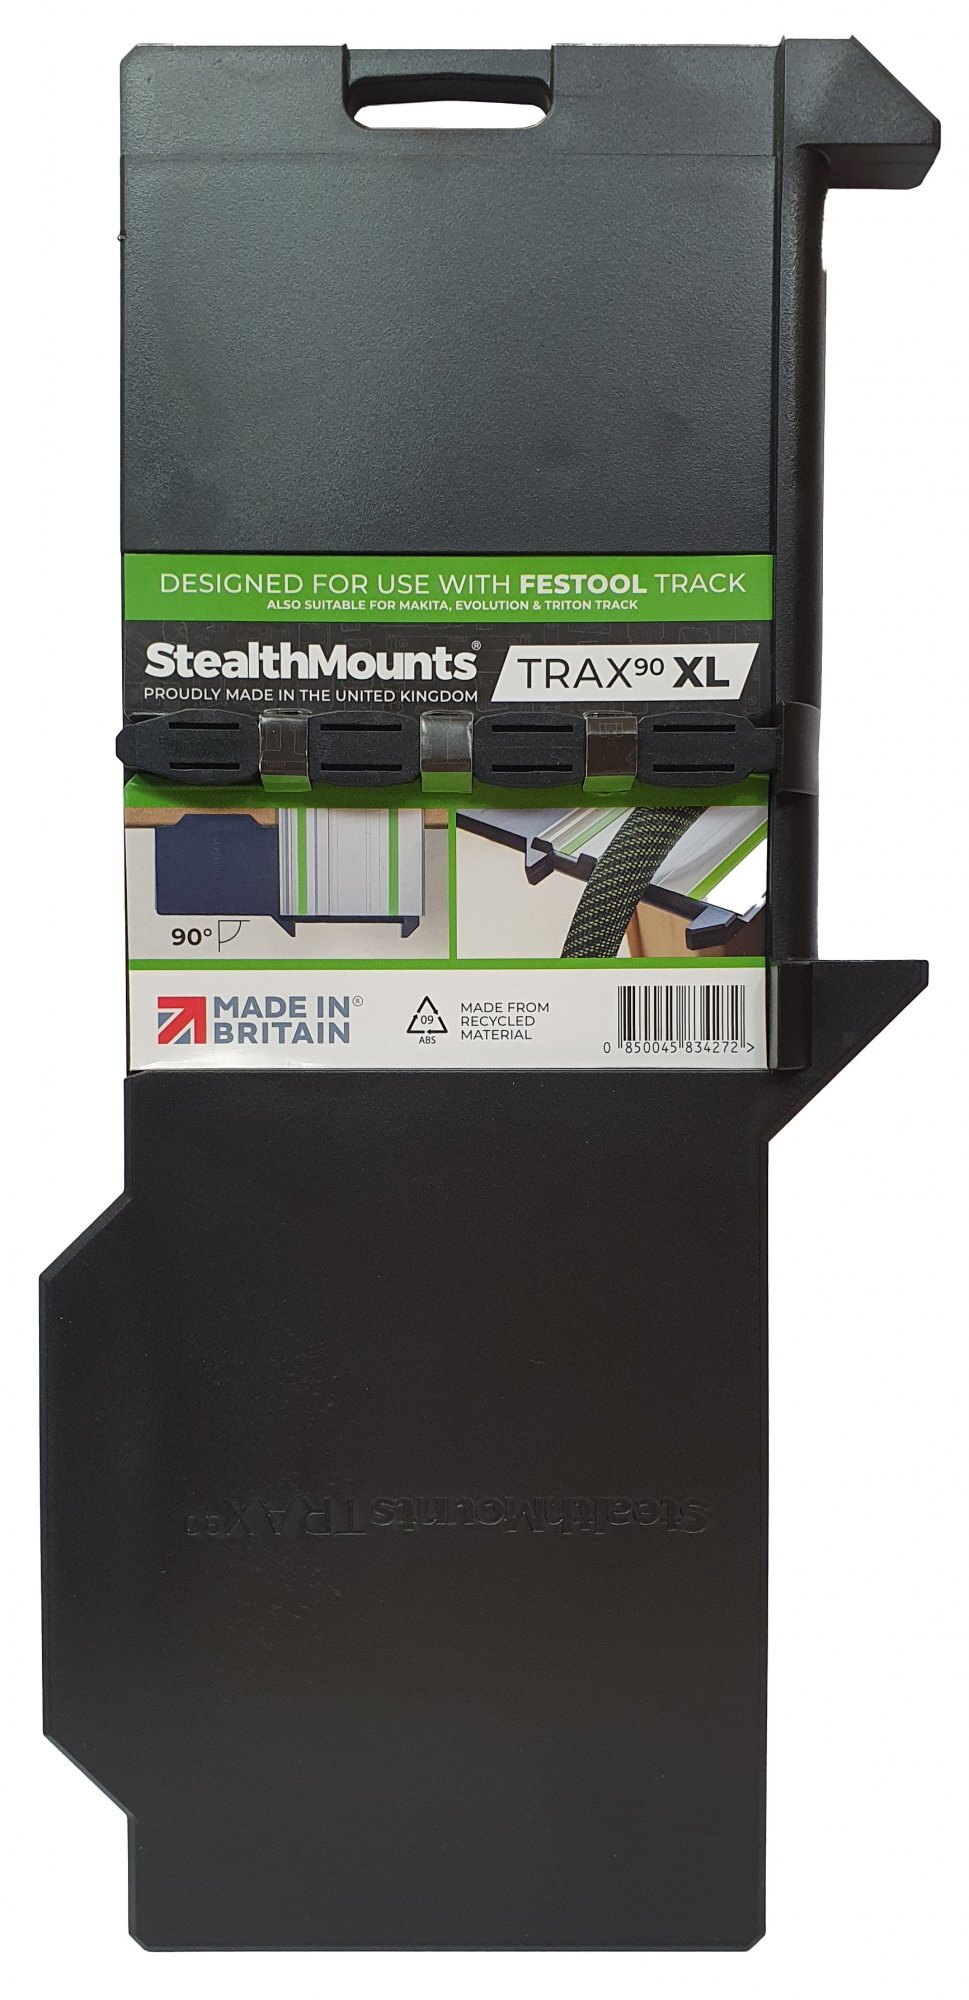 StealthMounts StealthMounts TSS-L-FT-1 Baanzaagvierkant Voor Festool Geleiderails - 90 Graden